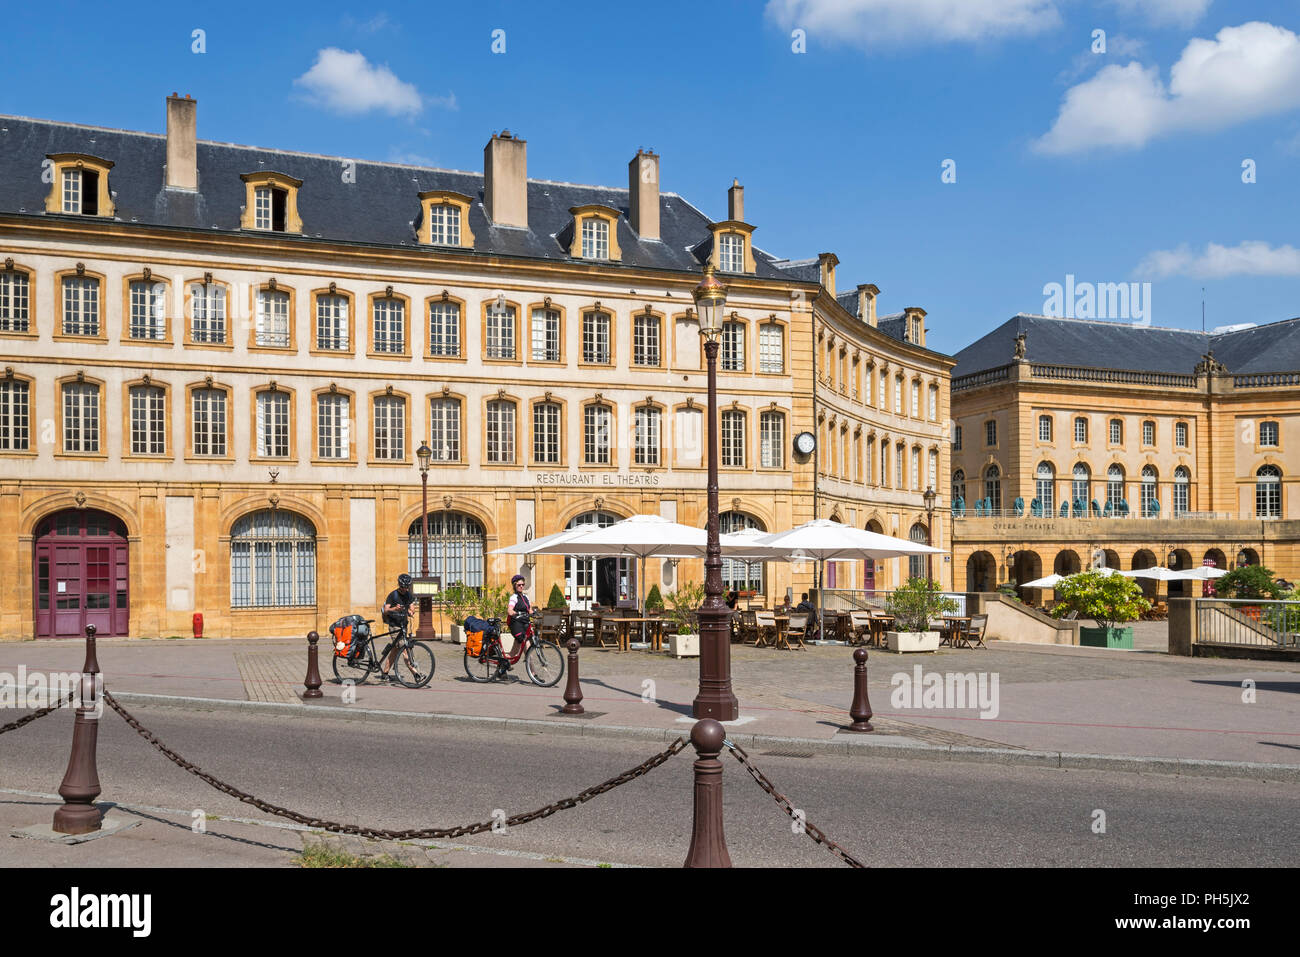 I ciclisti nella parte anteriore del ristorante El Theatris presso la Place de la Comédie / Commedia Square nella città di Metz, Moselle, Lorena, Francia Foto Stock